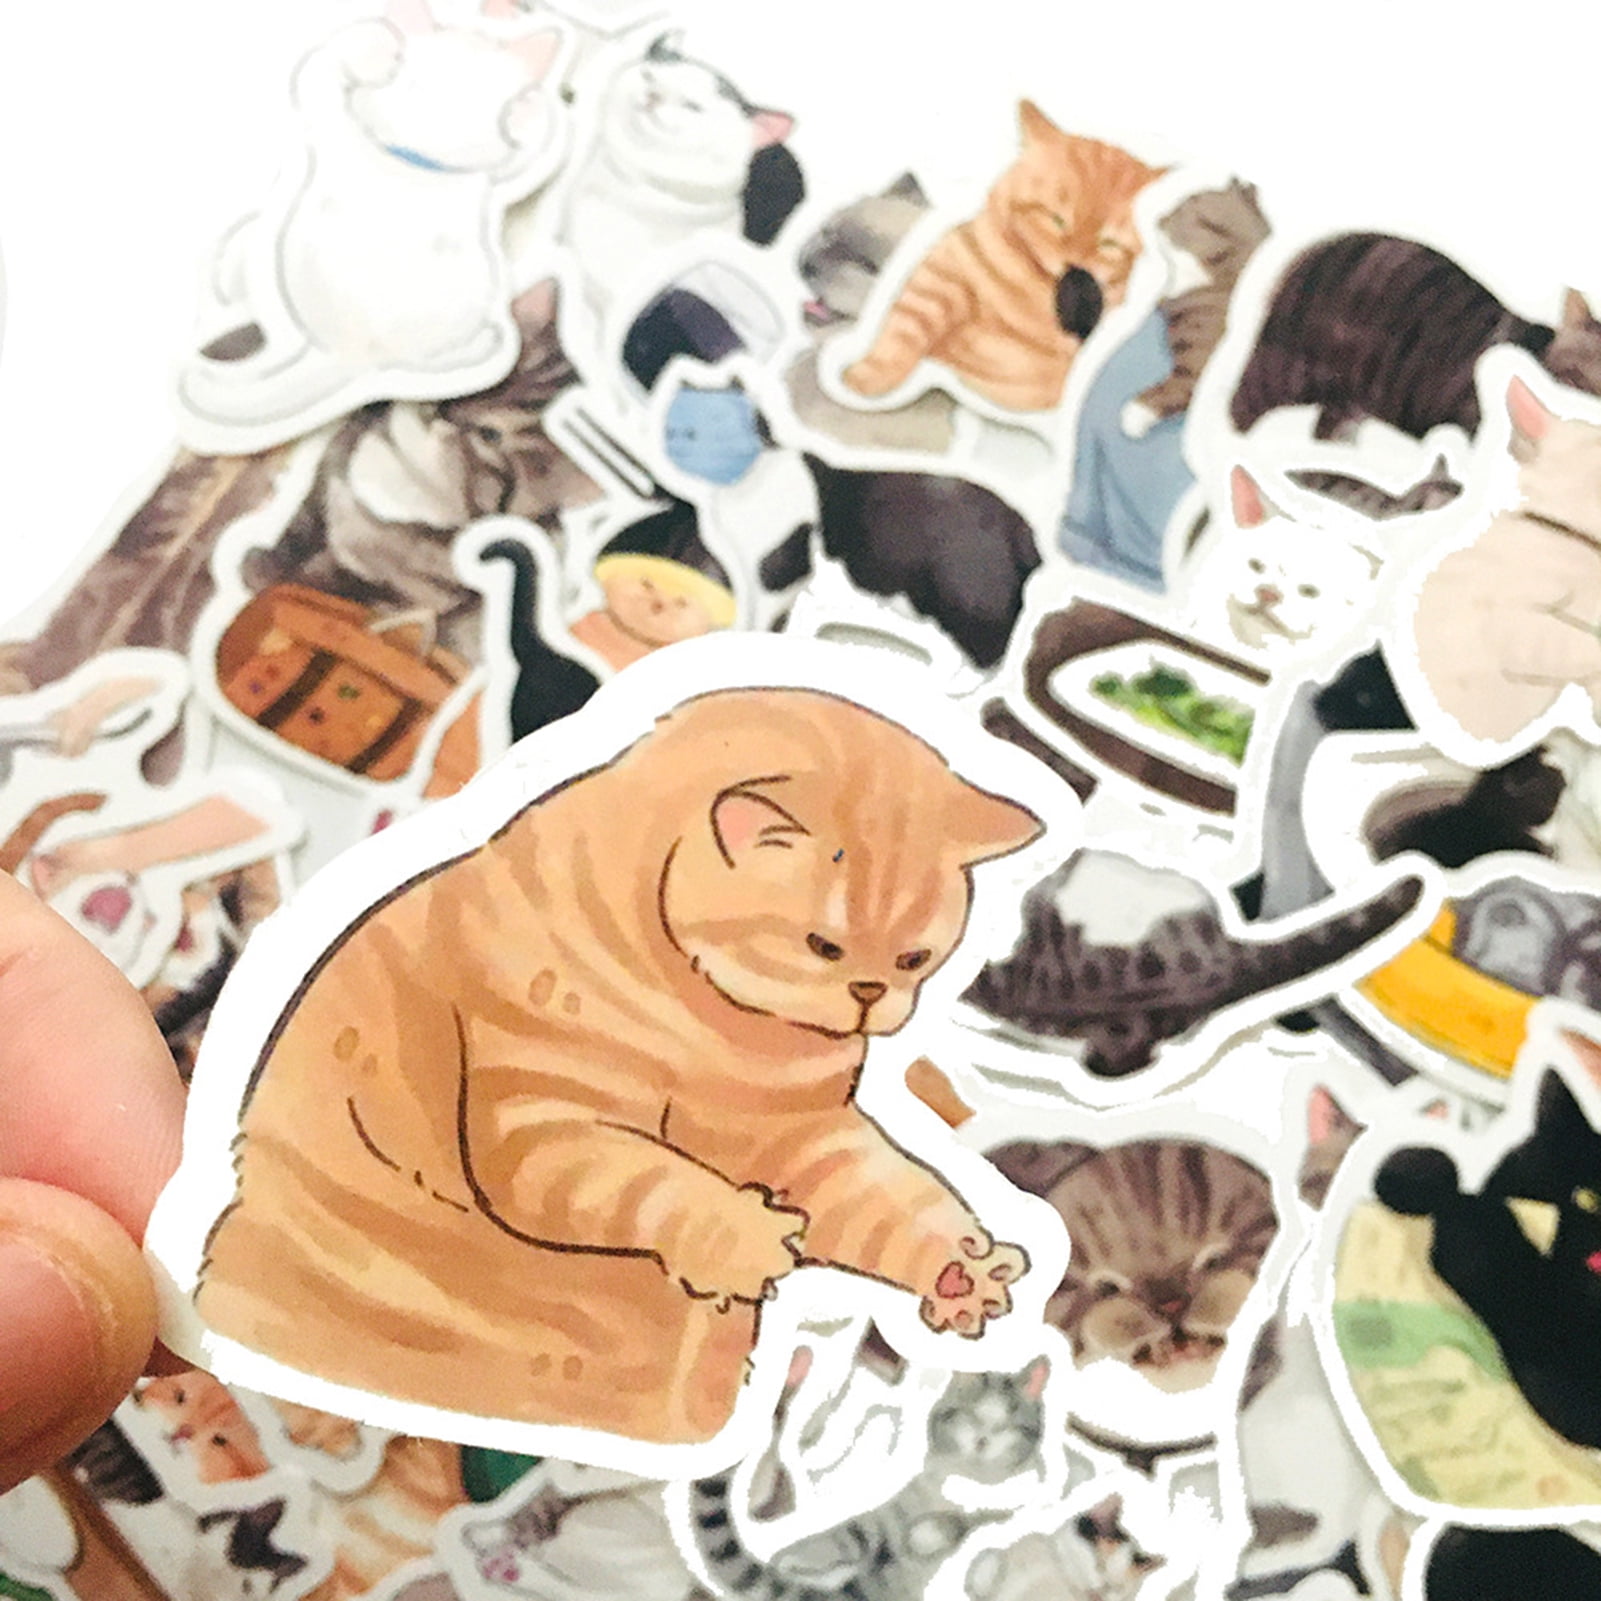 Kawaii Cat Stickers, 100 Pcs Cute Cat Laptop Stickers, Waterproof Vinyl Cat Sticker Decals, Cartoon Cat Sticker Pack for Water Bottles, Laptops